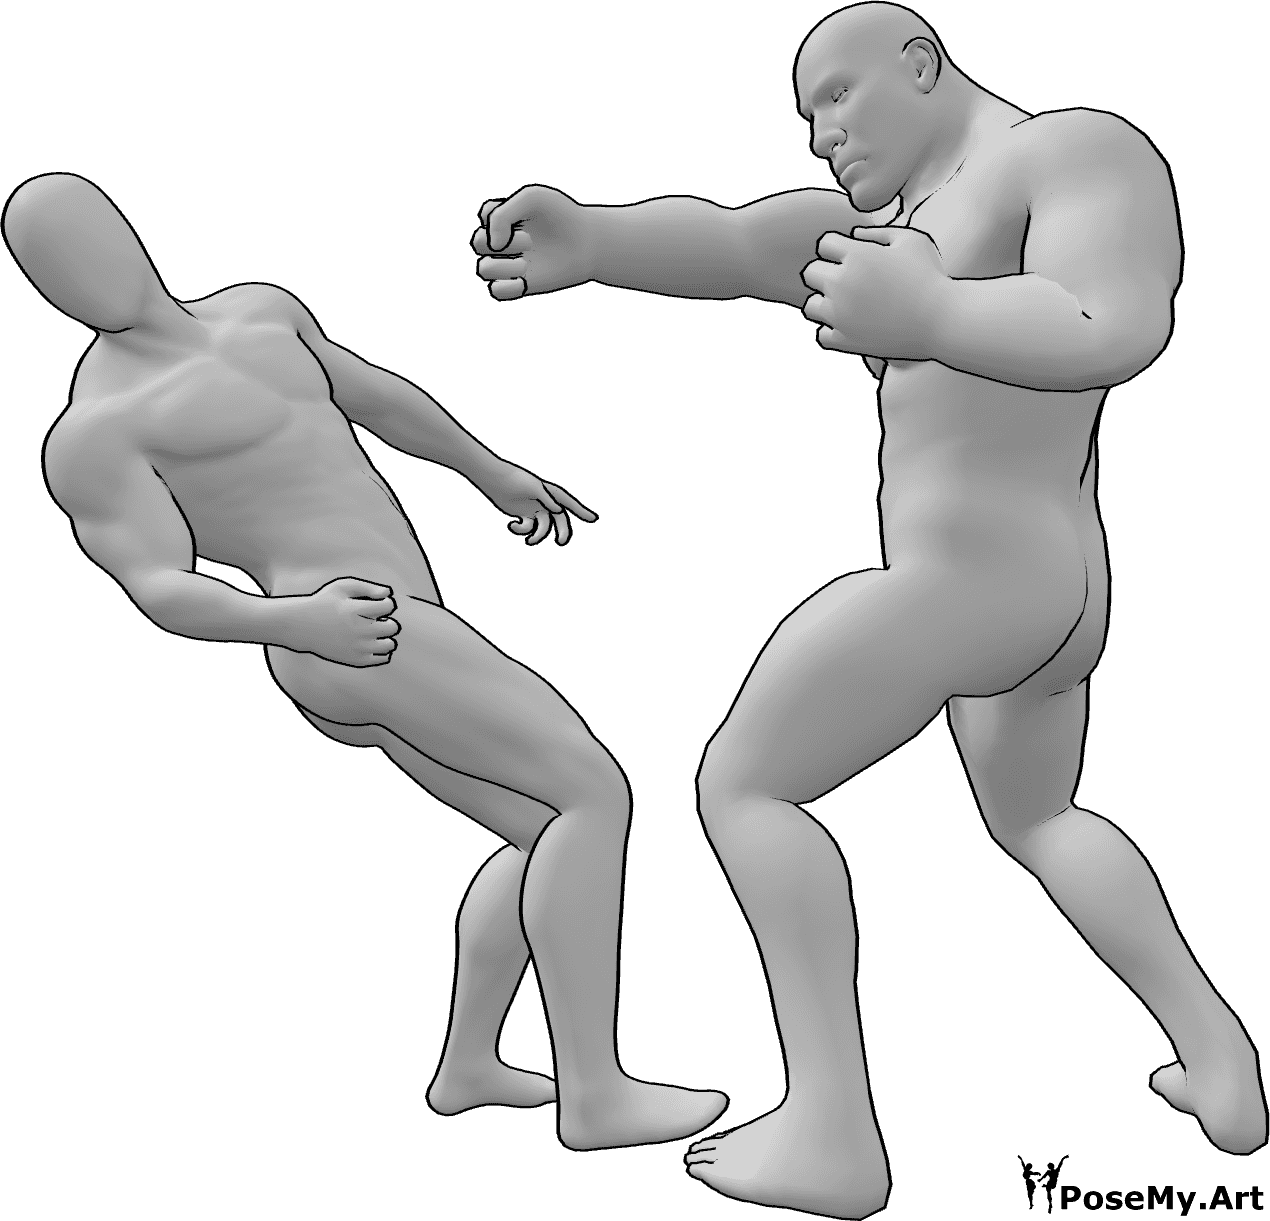 Riferimento alle pose- Posa da combattimento del maschio bruto - Il maschio bruto stende l'altro maschio che cade all'indietro.